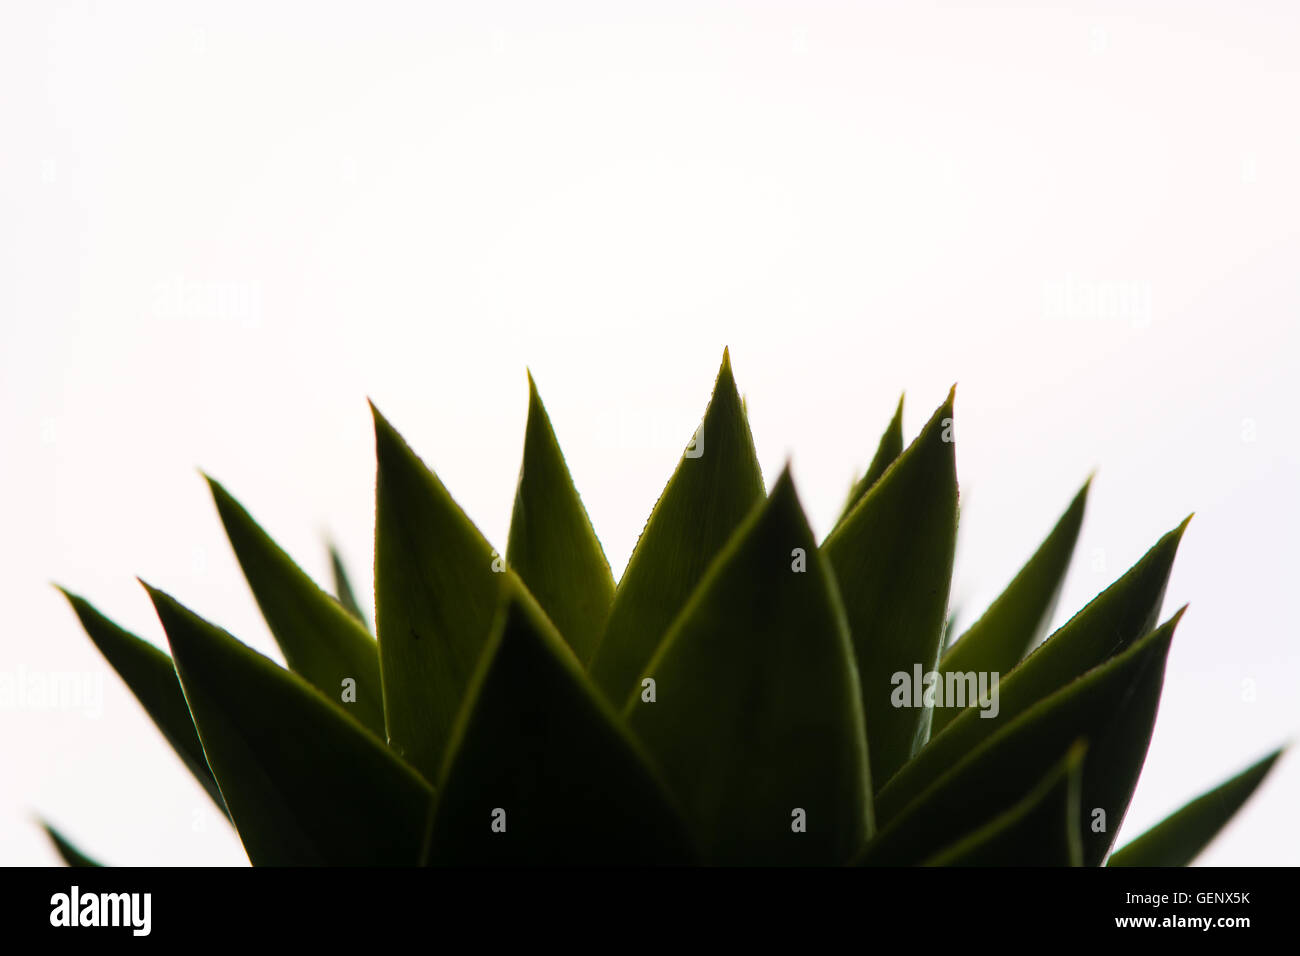 Arbre généalogique monkey puzzle (Araucaria araucana) feuilles. Forte de conifères feuilles écailleuses en famille Araucariaceae, vu contre ciel clair Banque D'Images